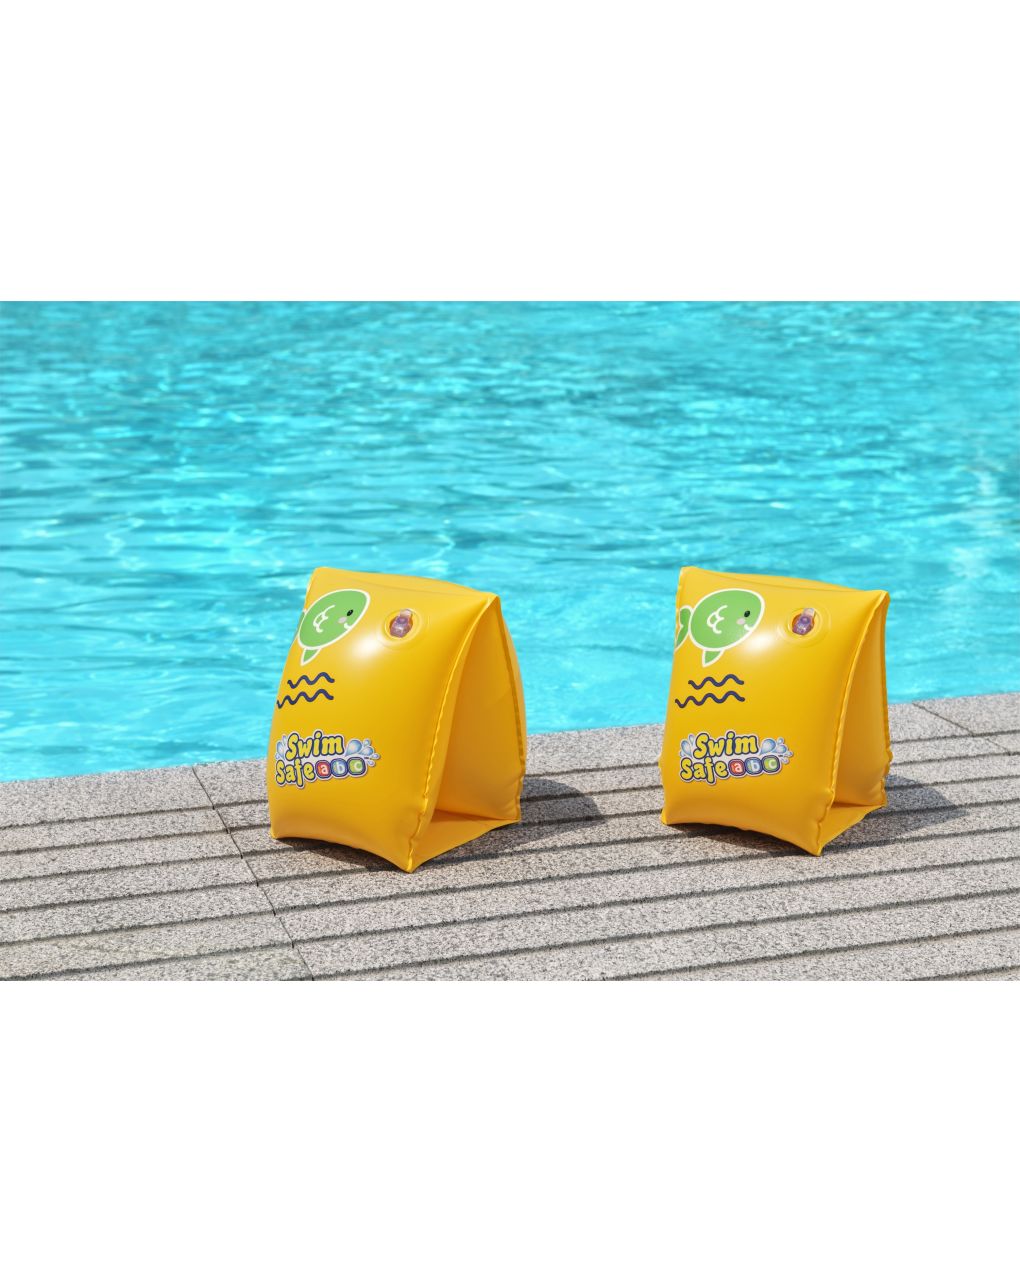 Braccioli swim safe abc step c 25x15 cm - taglia 3/6 anni - bestway - Bestway